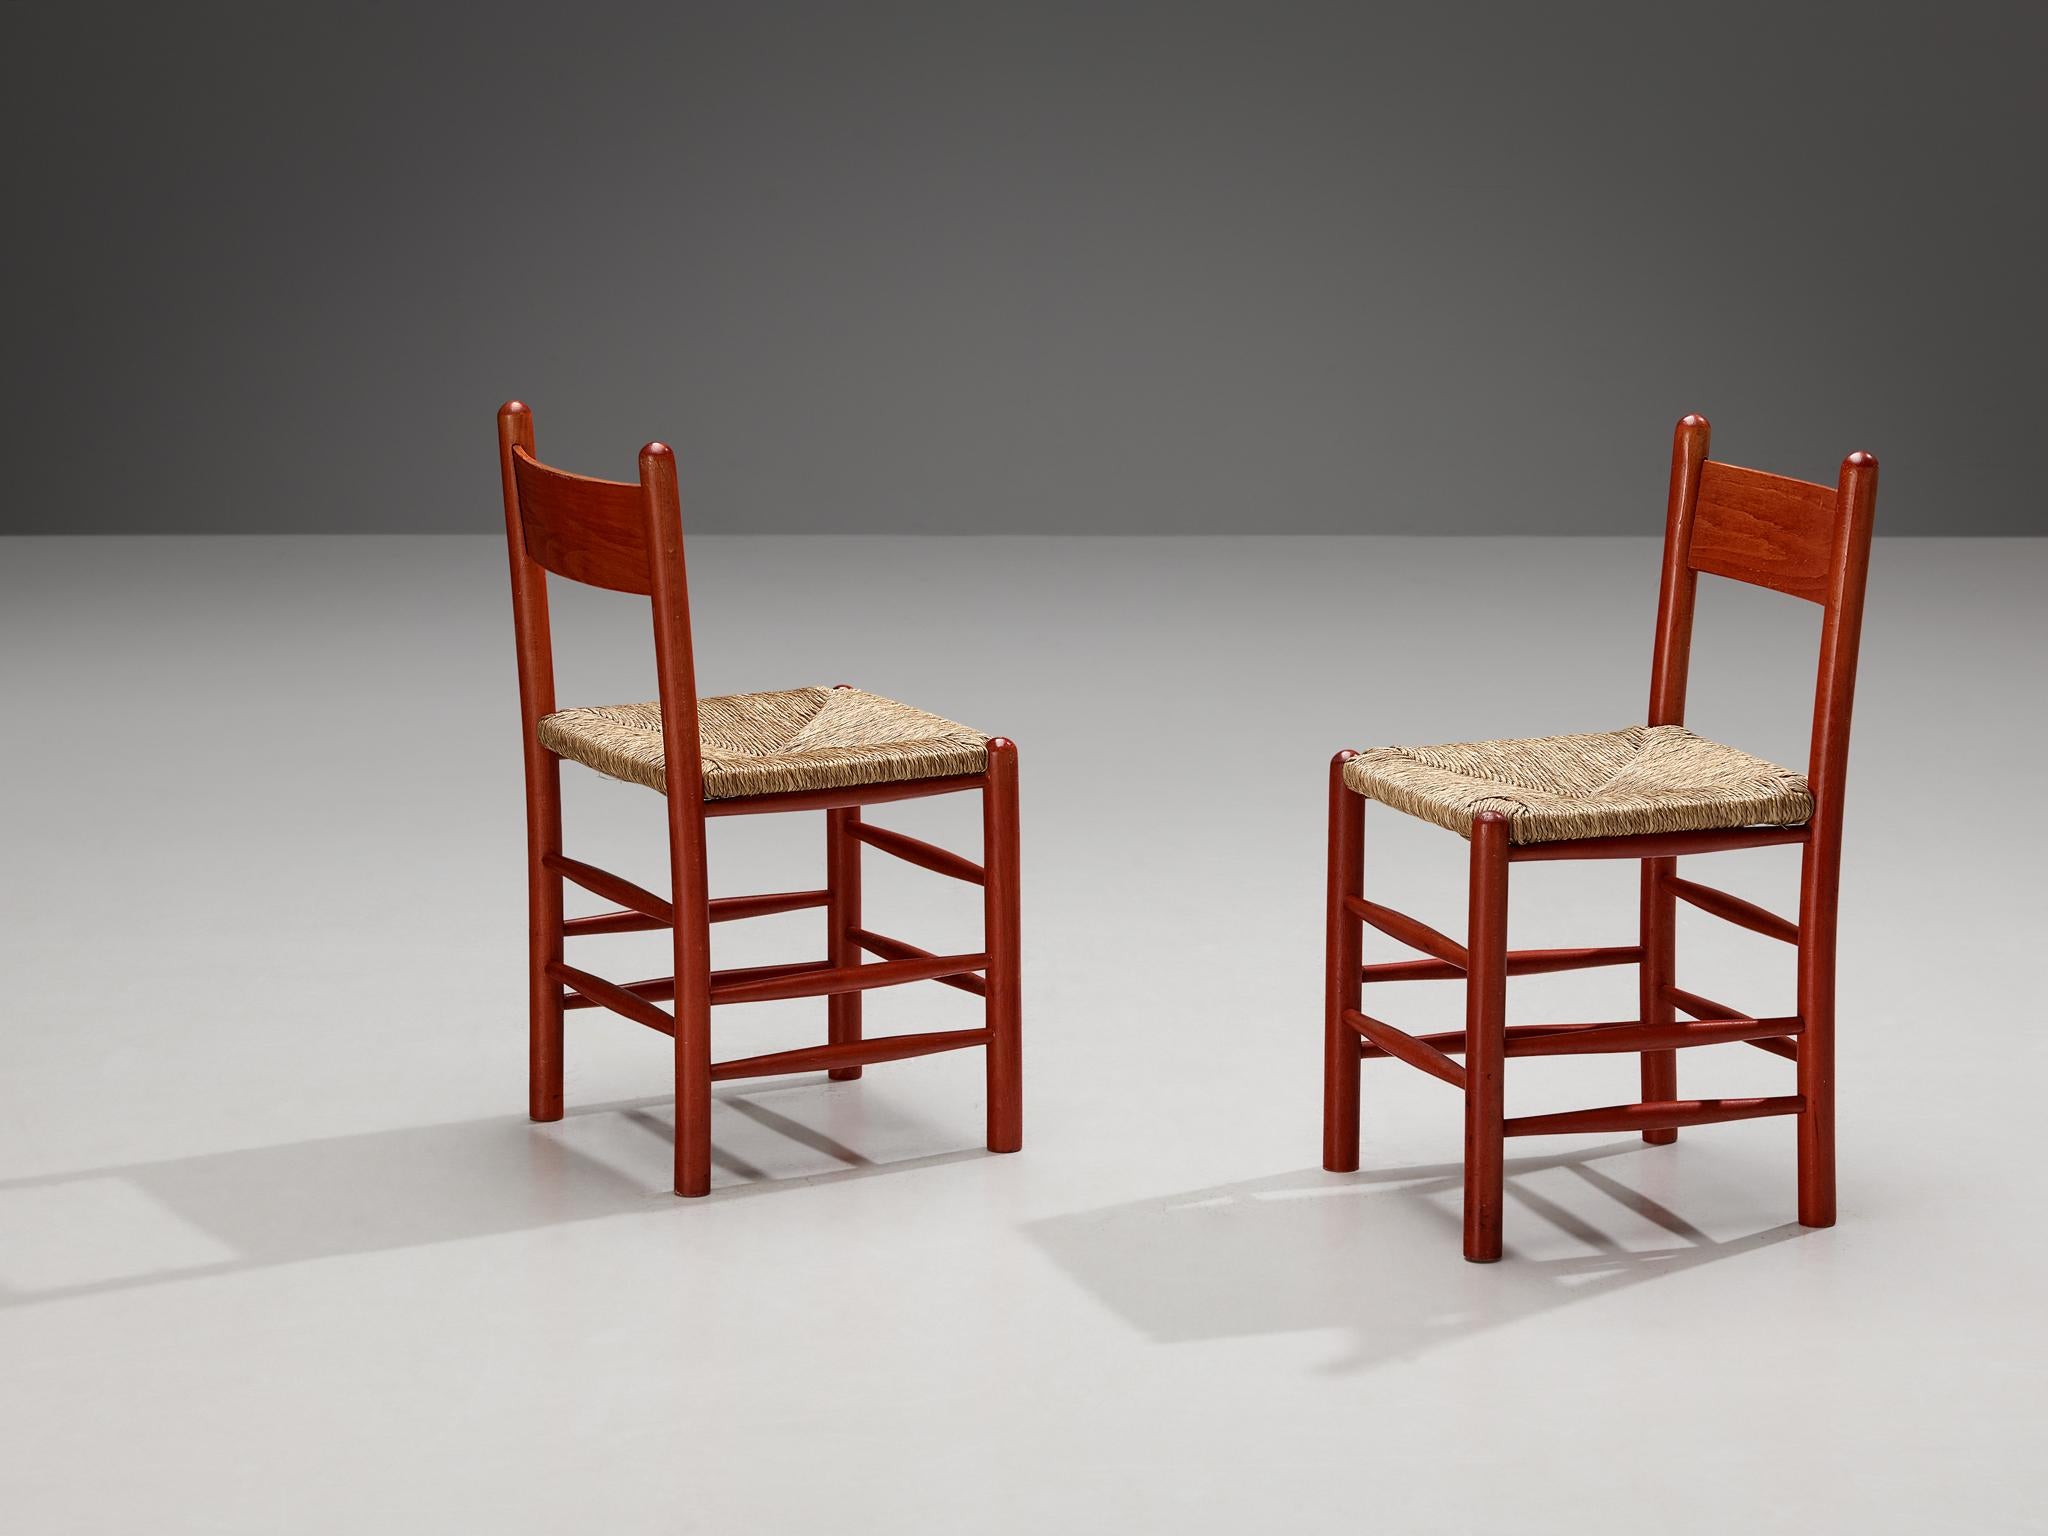 Paar Esszimmerstühle, Buche, Stroh, Frankreich, 1960er Jahre.

Wunderschönes Set französischer Stühle mit Gestellen aus Rotbuche und klassischen Strohsitzen. Das Gestell dieser Esszimmerstühle besteht aus massivem Holz und zylindrischen, dicken